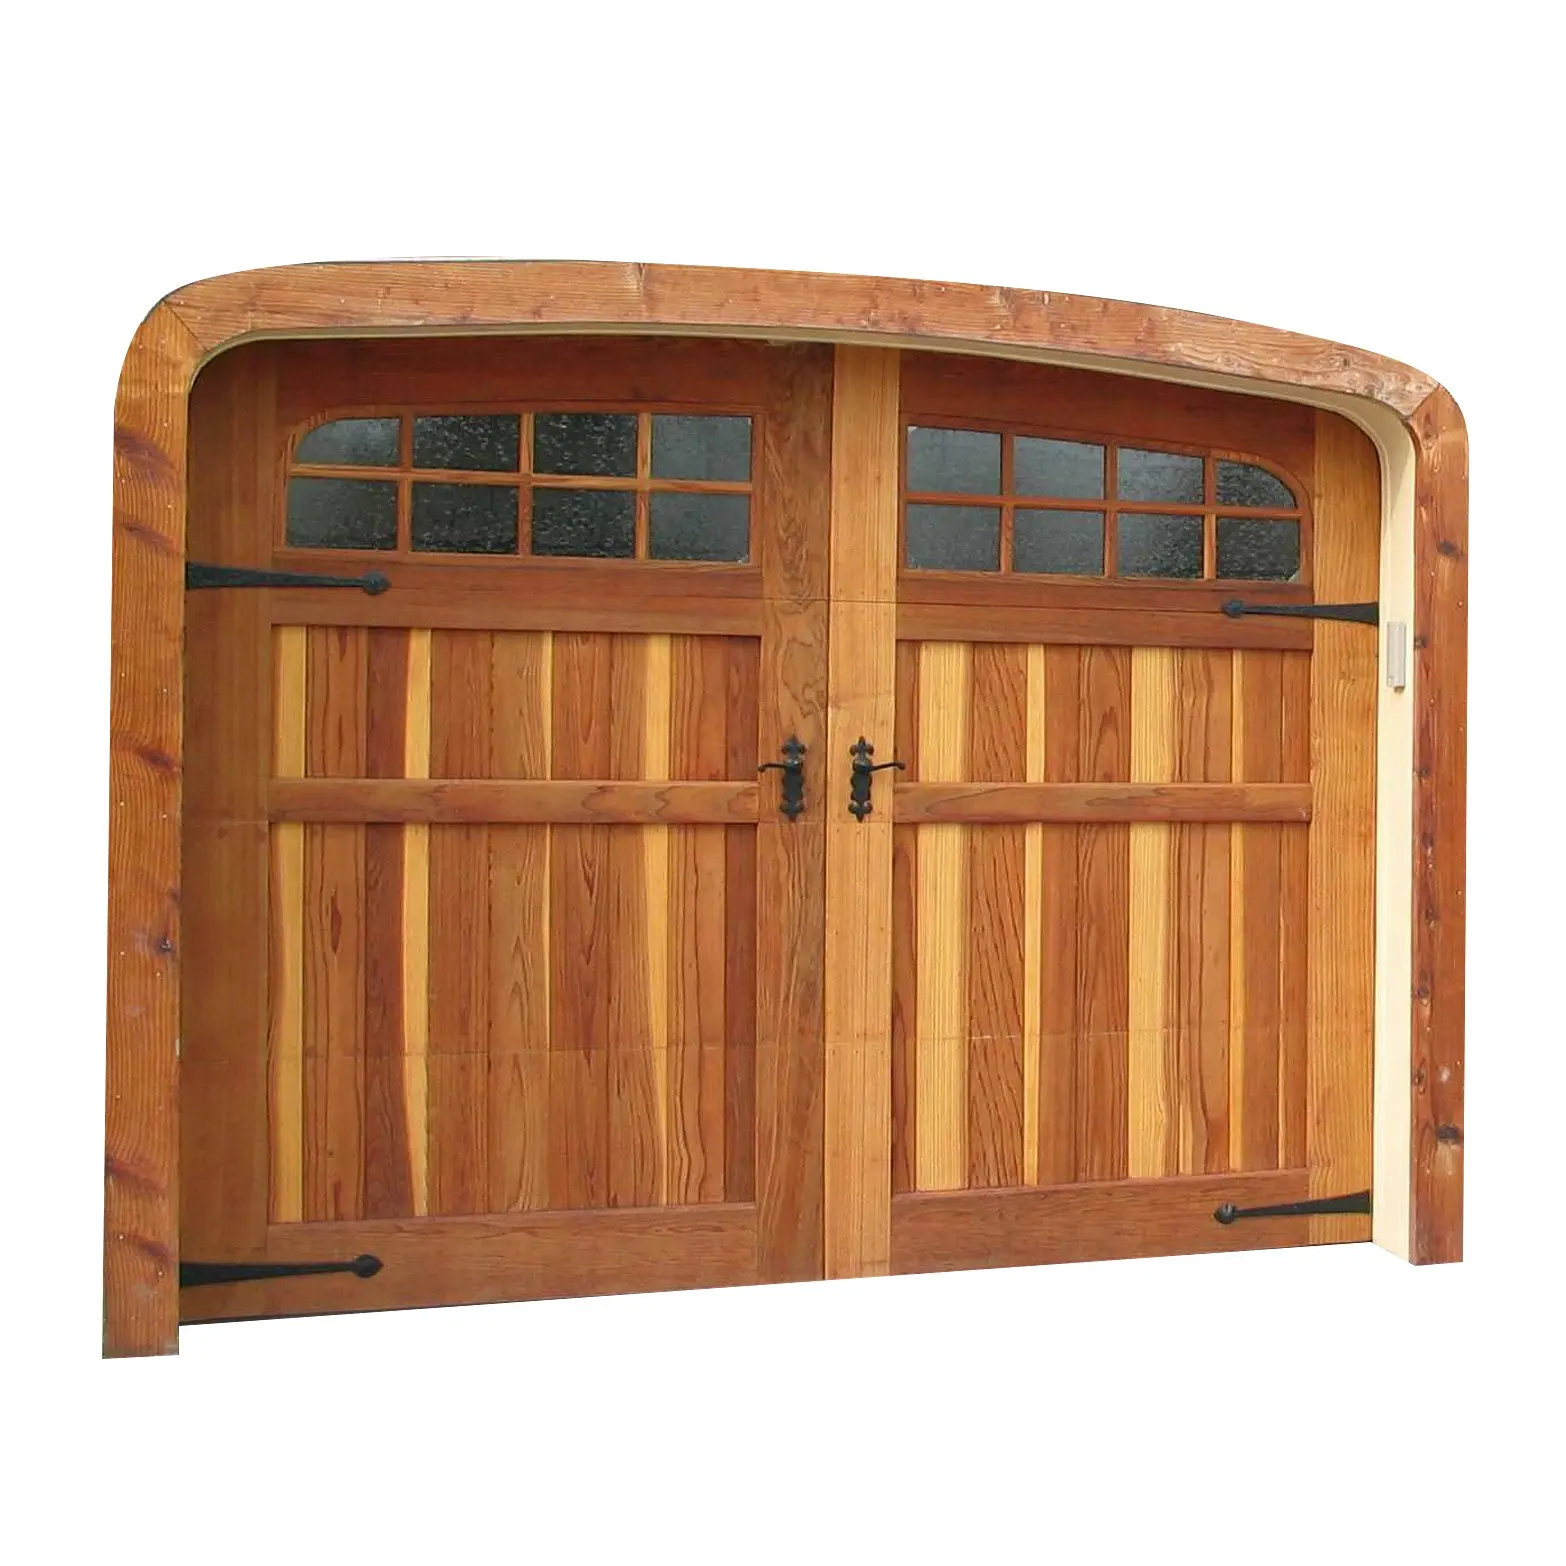 American Modern 9x8 Insulated Garage Door Solid Wood Overhead Sliding Door horizontal Flap Single Garage Doors with Windows